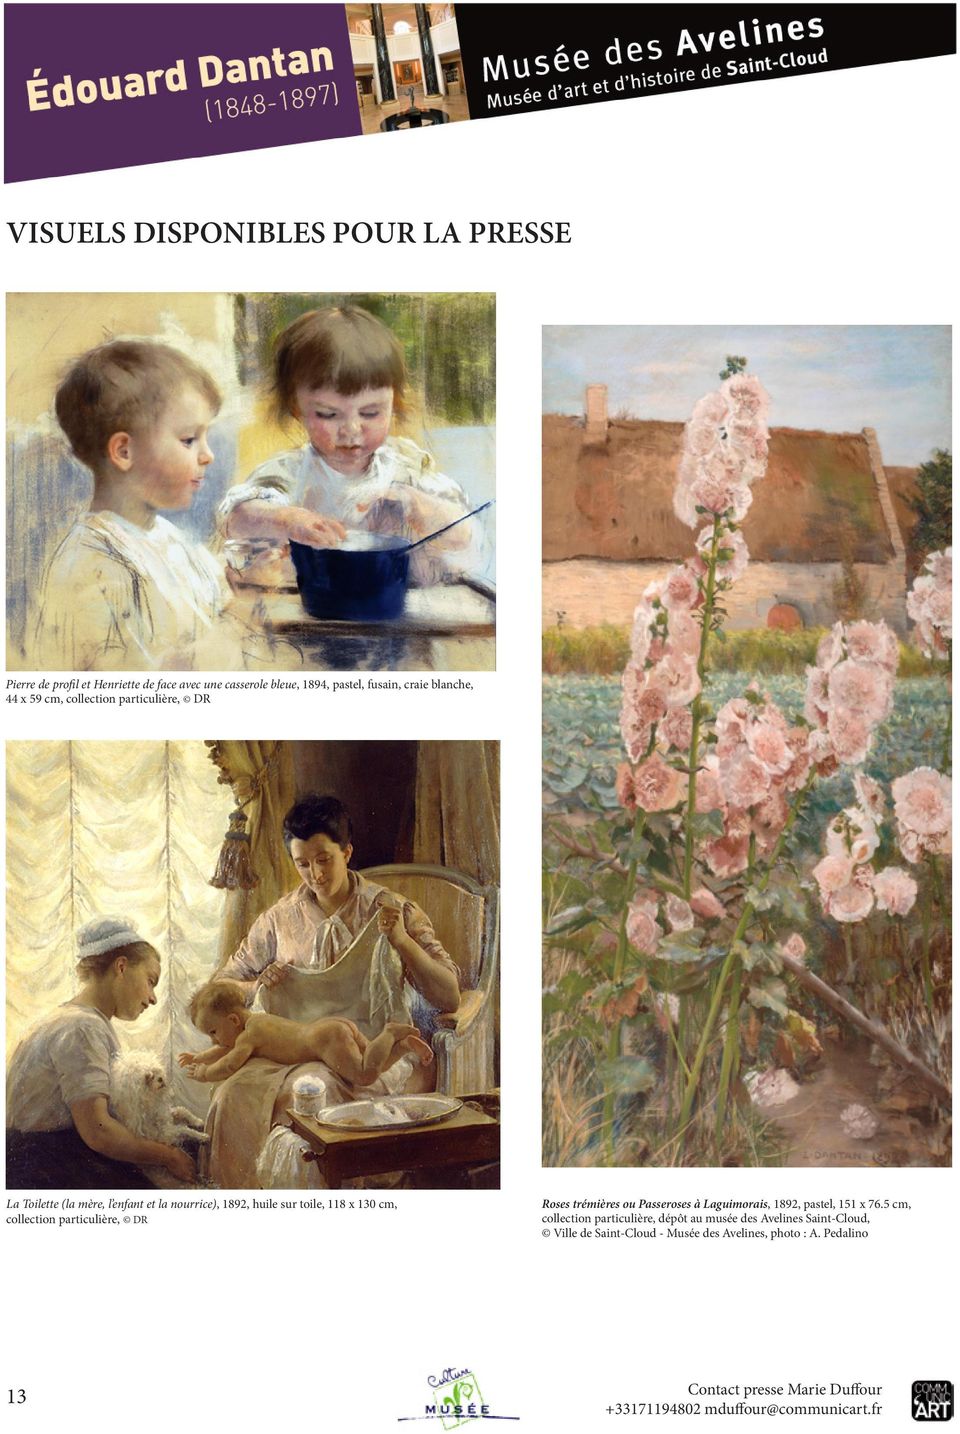 toile, 118 x 130 cm, collection particulière, DR Roses trémières ou Passeroses à Laguimorais, 1892, pastel, 151 x 76.